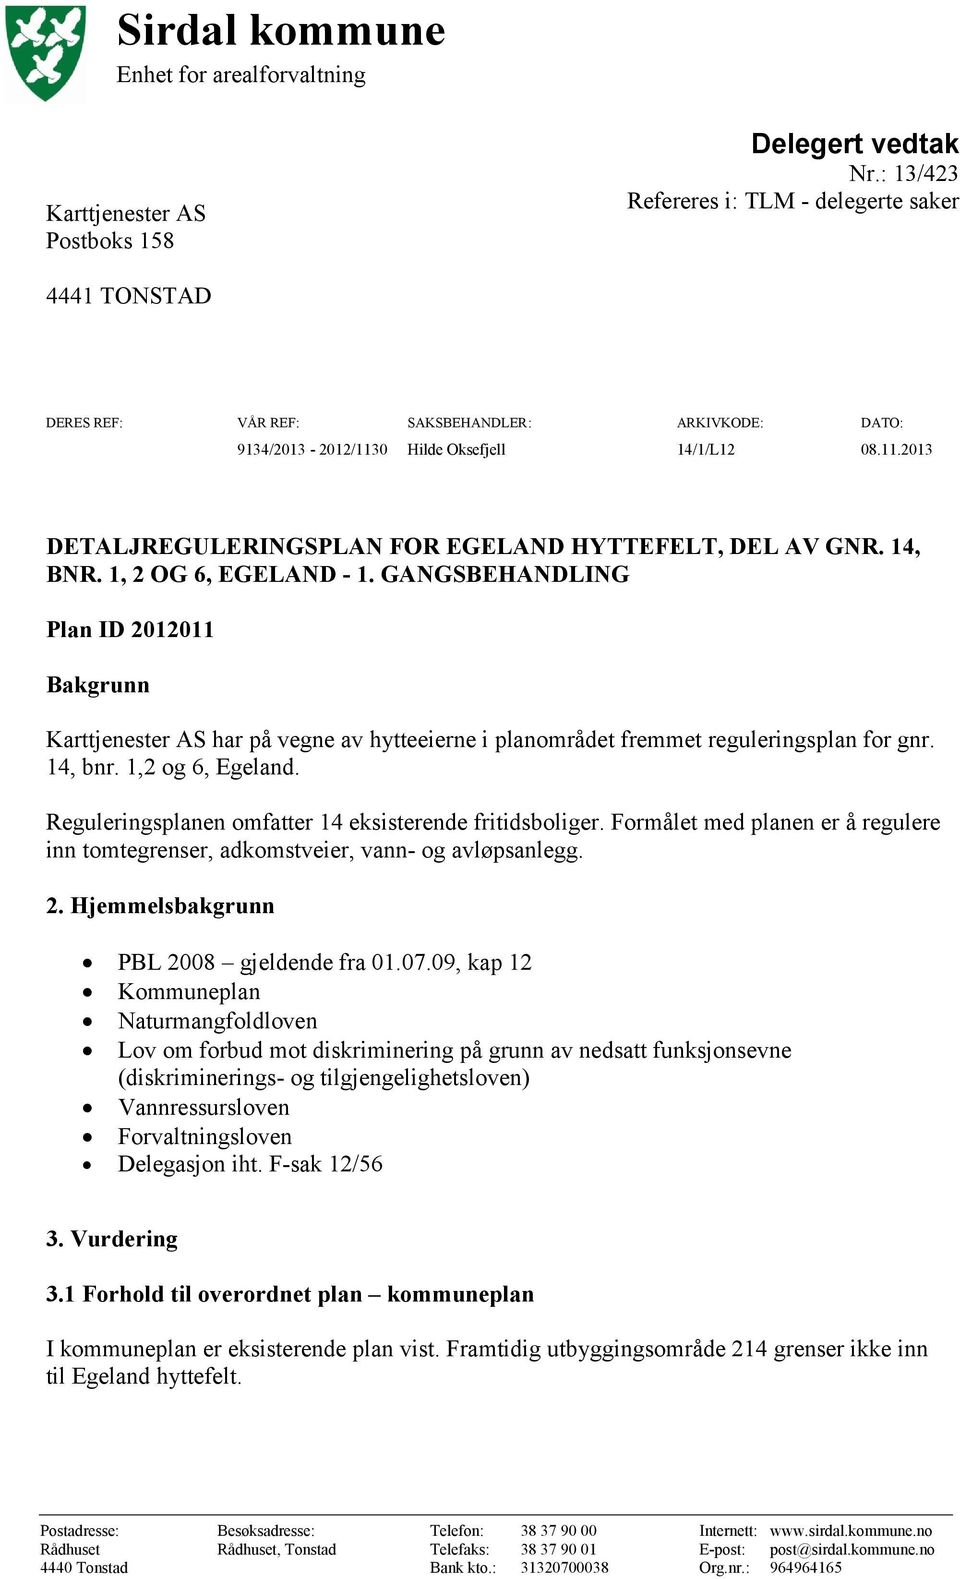 14, BNR. 1, 2 OG 6, EGELAND - 1. GANGSBEHANDLING Plan ID 2012011 Bakgrunn Karttjenester AS har på vegne av hytteeierne i planområdet fremmet reguleringsplan for gnr. 14, bnr. 1,2 og 6, Egeland.